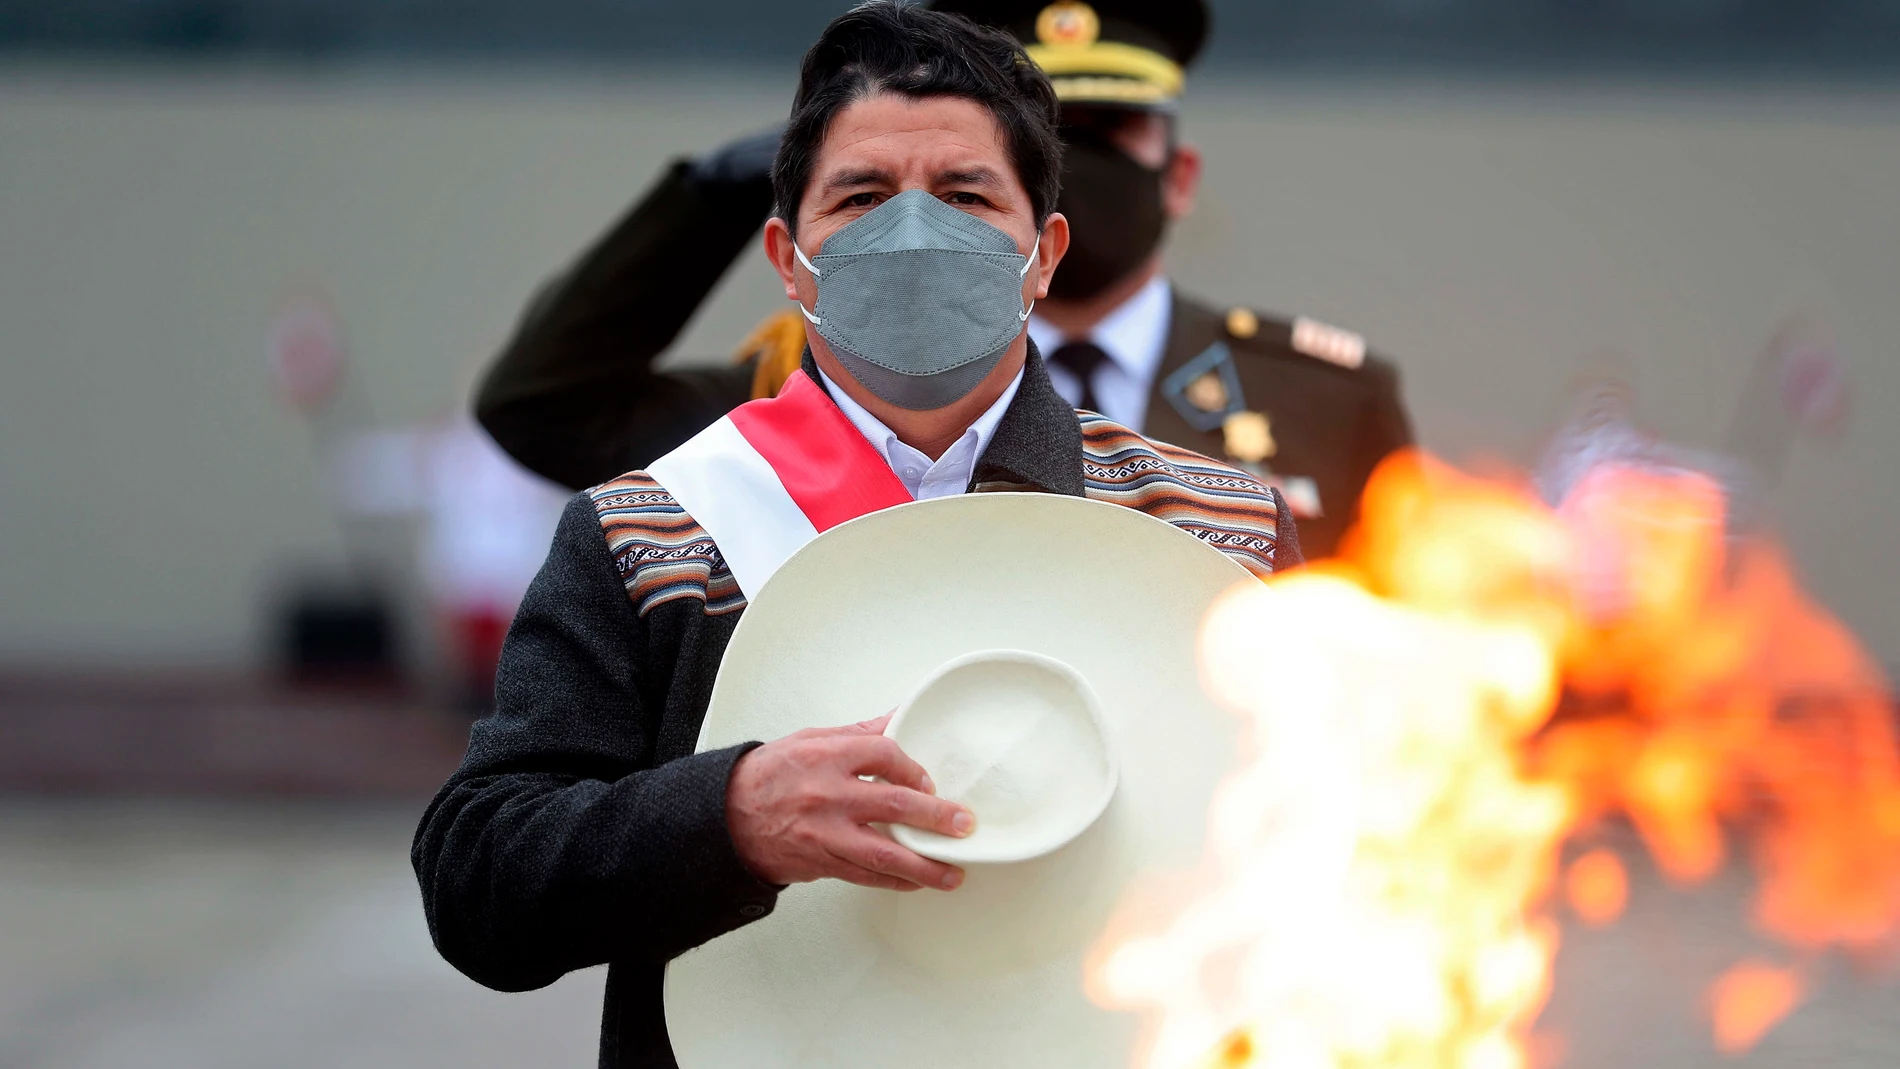 El nuevo presidente de Perú, Pedro Castillo, saluda después de encender un cáliz en honor a las víctimas del coronavirus en una base militar en Lima, Perú